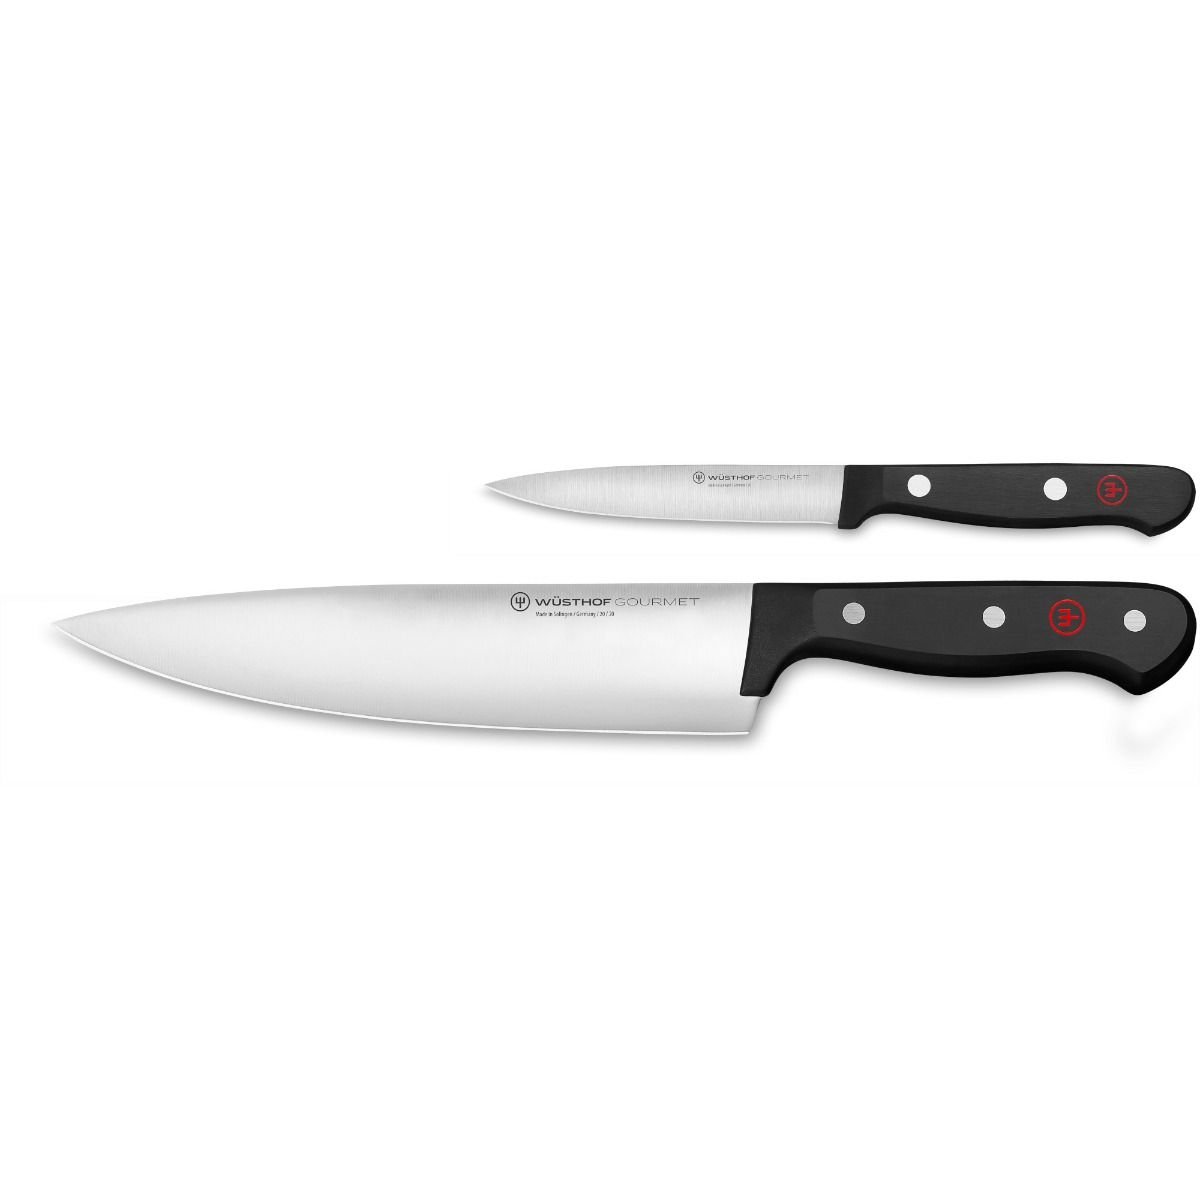 4 Pc Essential/Starter Knife Set Bundle